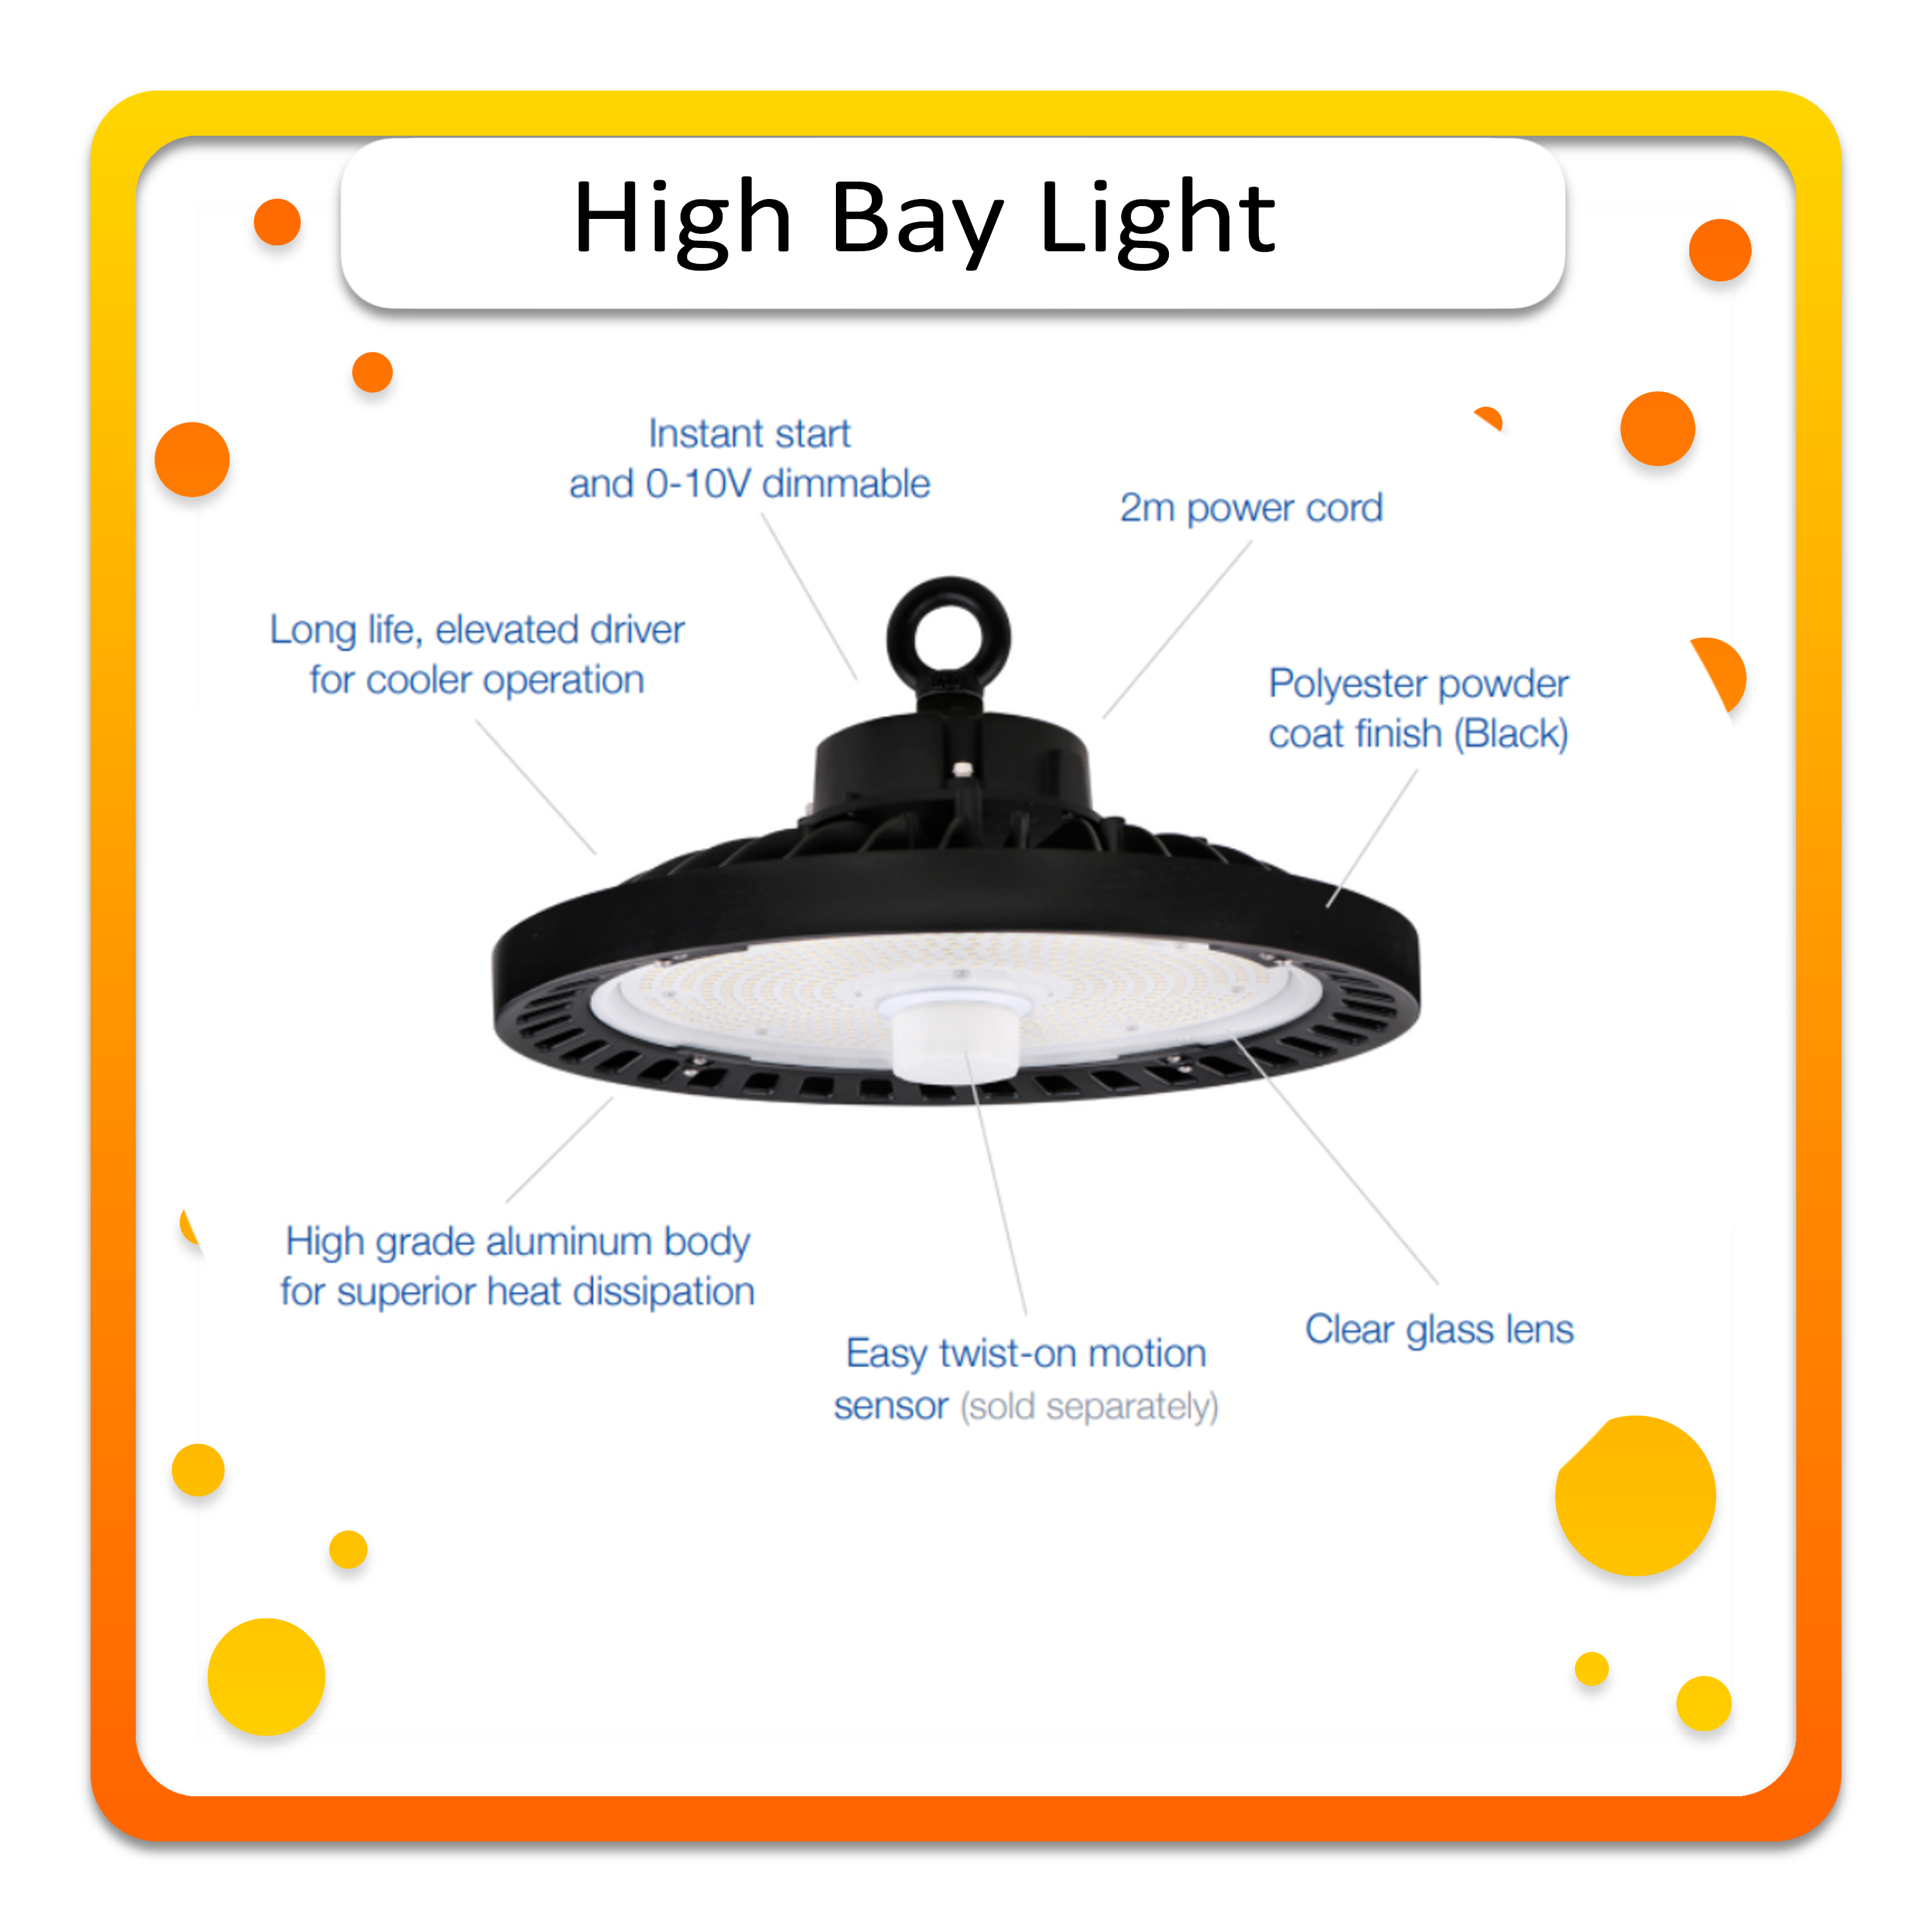 High Bay Light.png